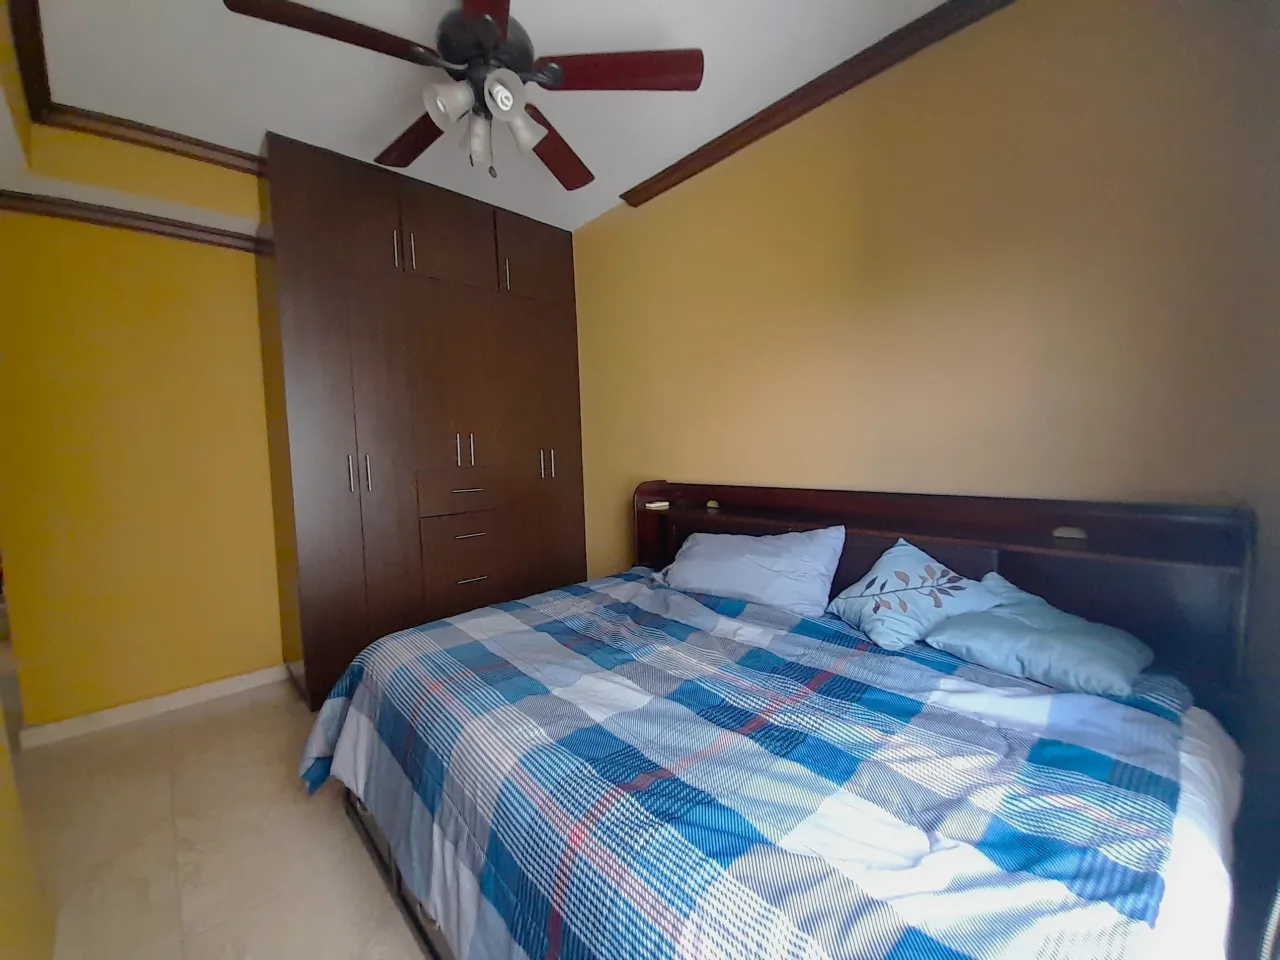 La habitación secundaria cuenta con una amplia cama matrimonial, clóset ventilador colgado en el techo, paredes de color amarillo y suelo de porcelanato.